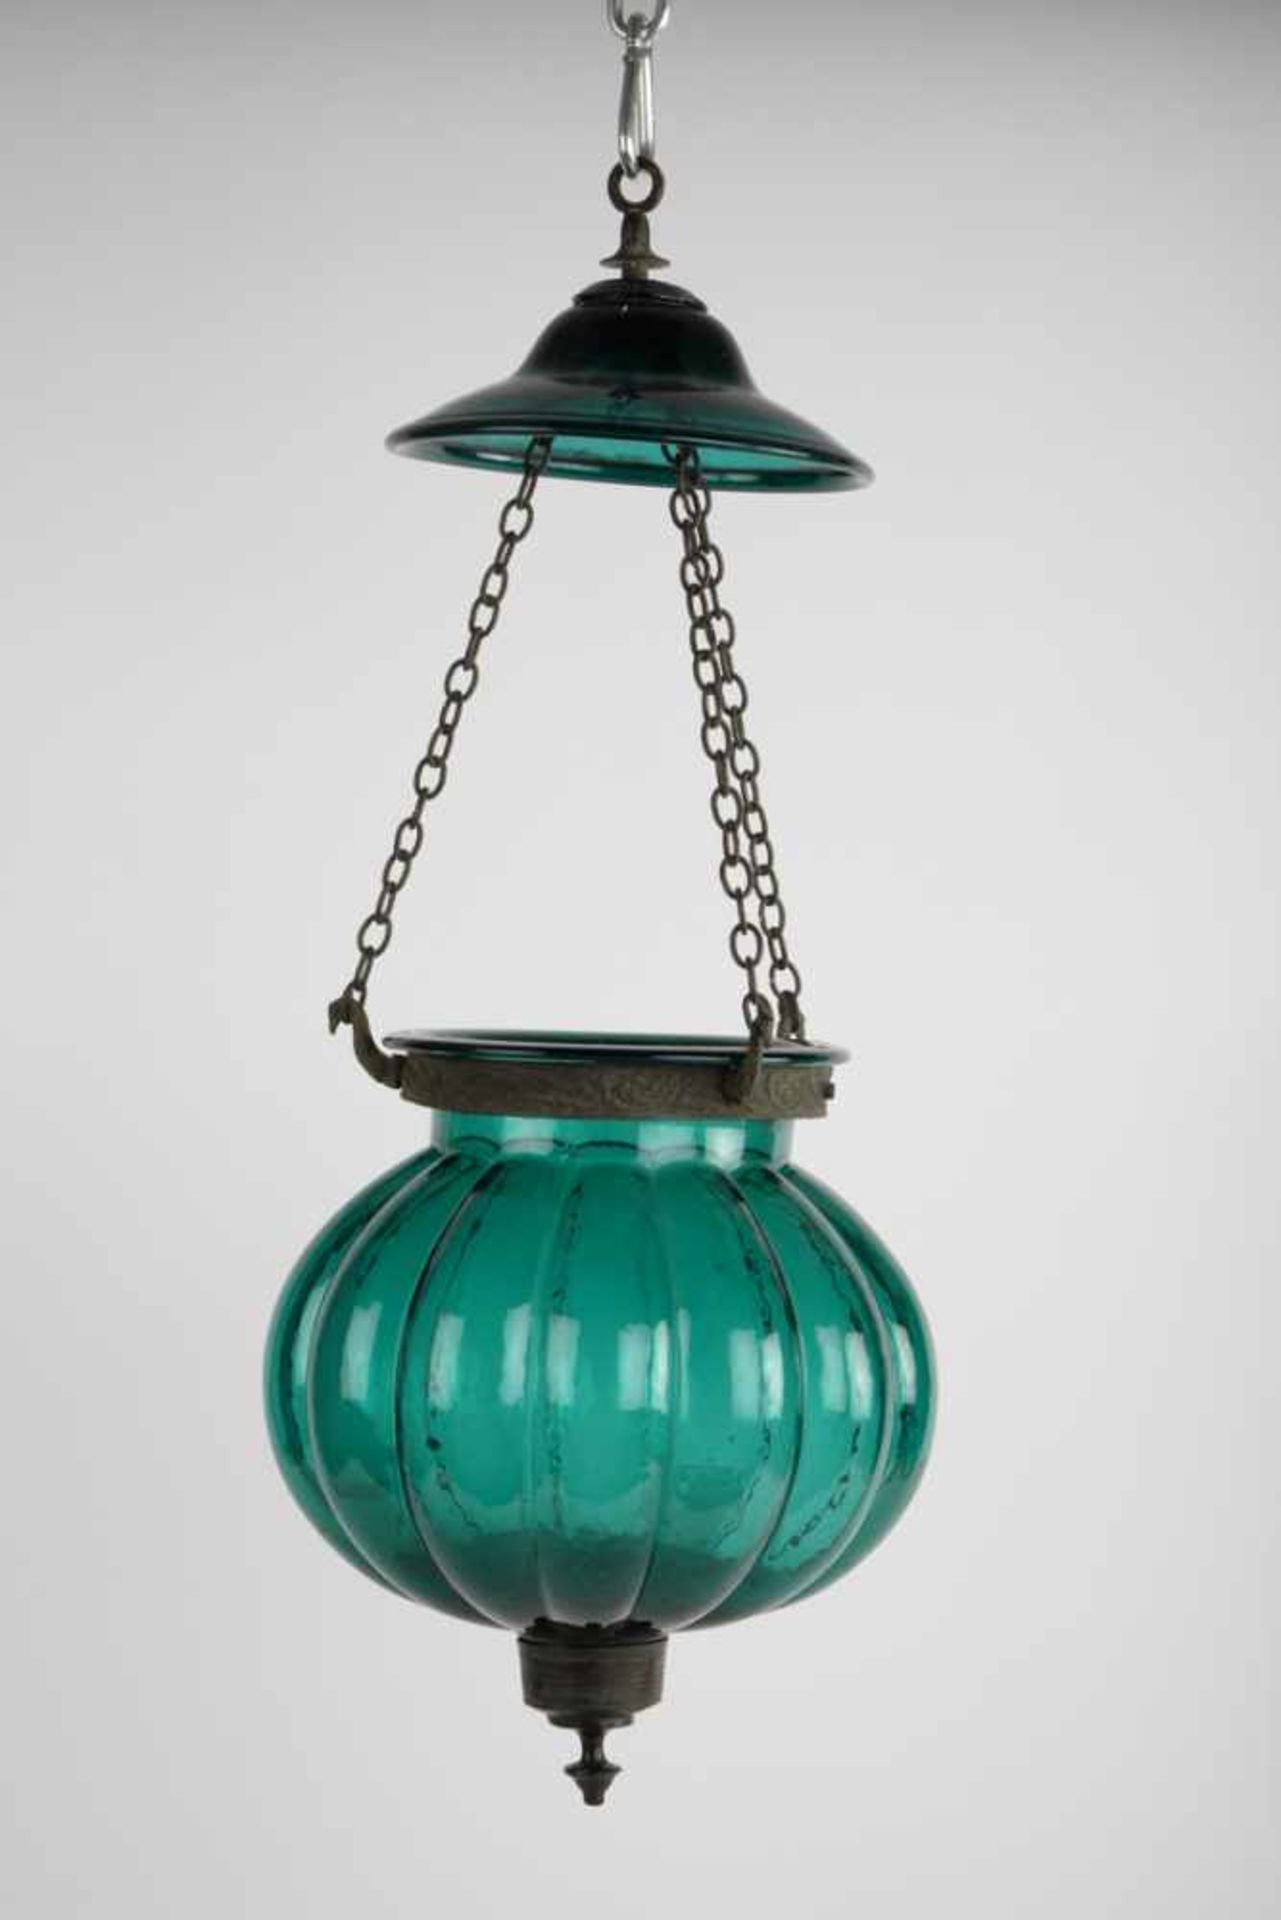 Paarige Ampellampen, asiatische Montierung.Gerippter Korpus, einmal klares Glas und einmal grünes